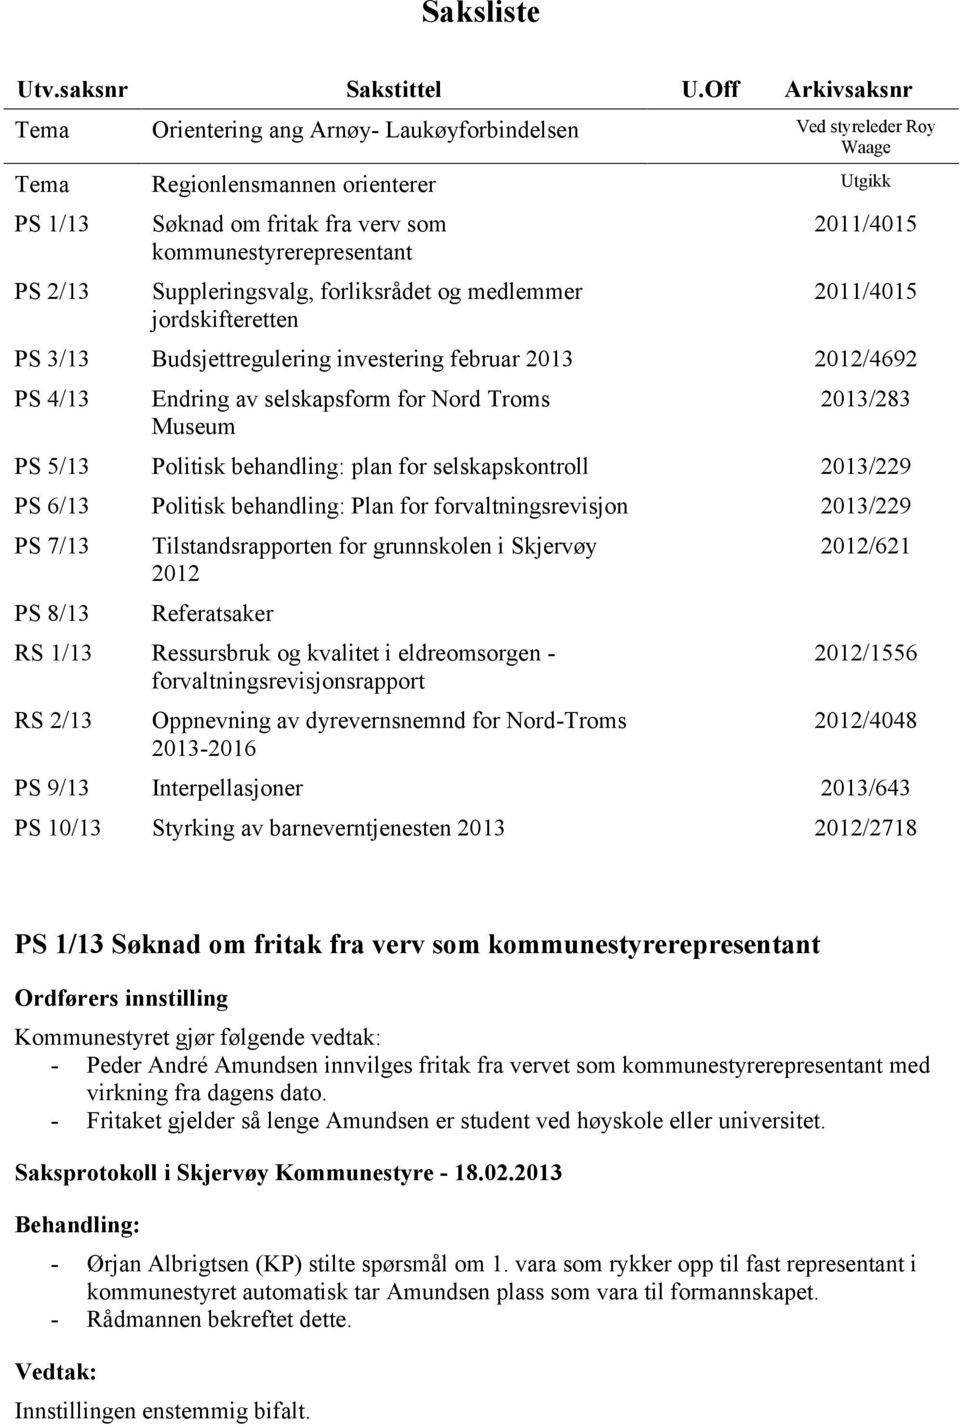 Suppleringsvalg, forliksrådet og medlemmer jordskifteretten 2011/4015 2011/4015 PS 3/13 Budsjettregulering investering februar 2013 2012/4692 PS 4/13 Endring av selskapsform for Nord Troms Museum